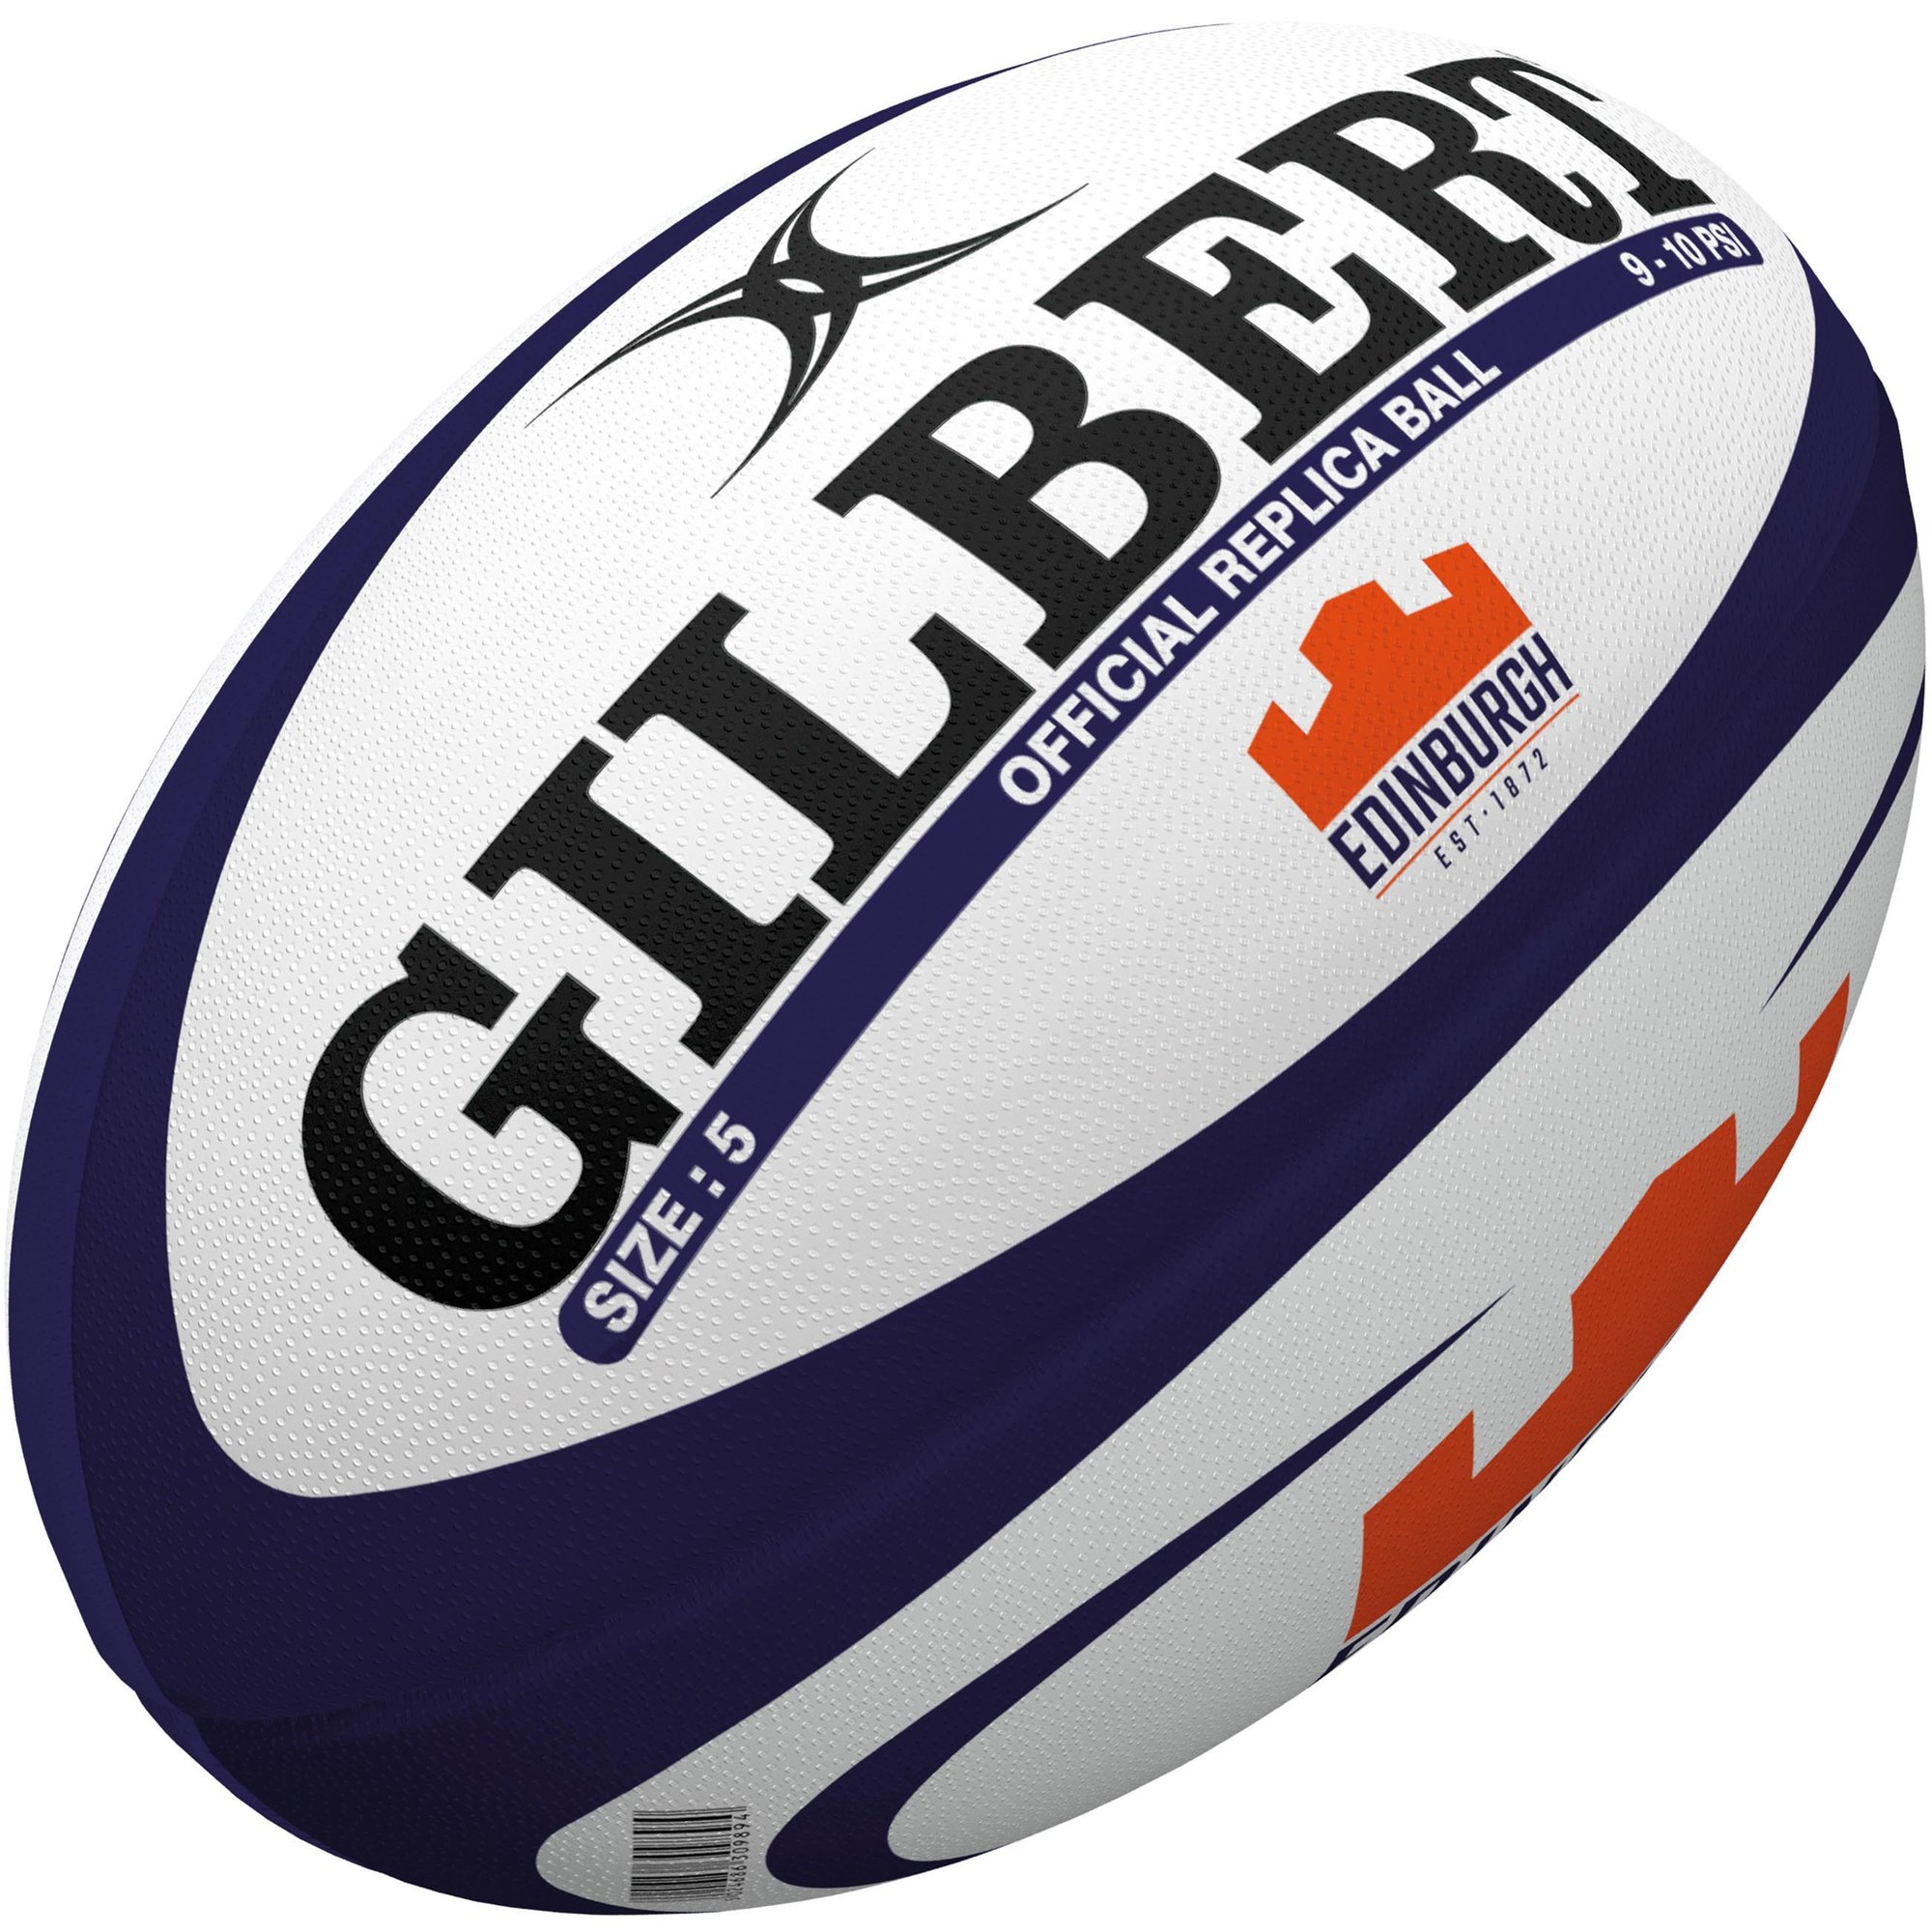  Ballon  Rugby  Gilbert Edinburgh Balles de  Sport